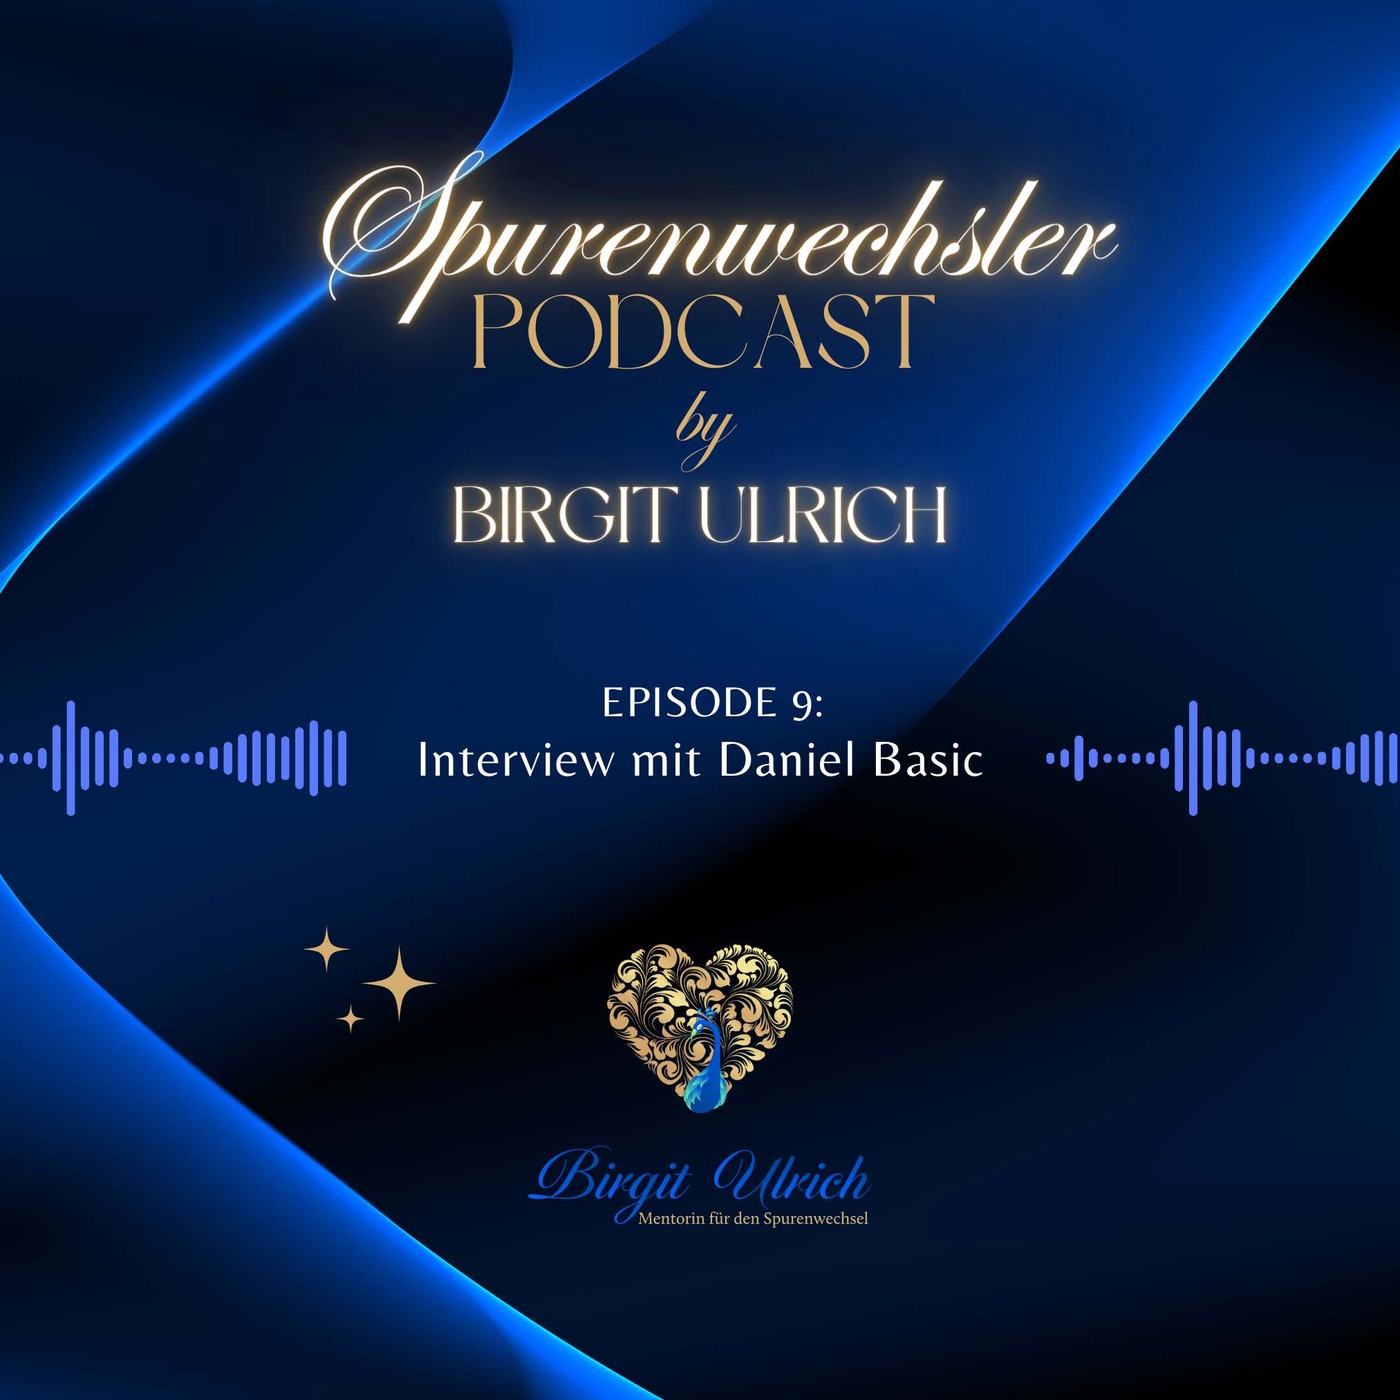 Spurenwechsler Podcast - Episode #9 mit Birgit Ulrich und Daniel Basic